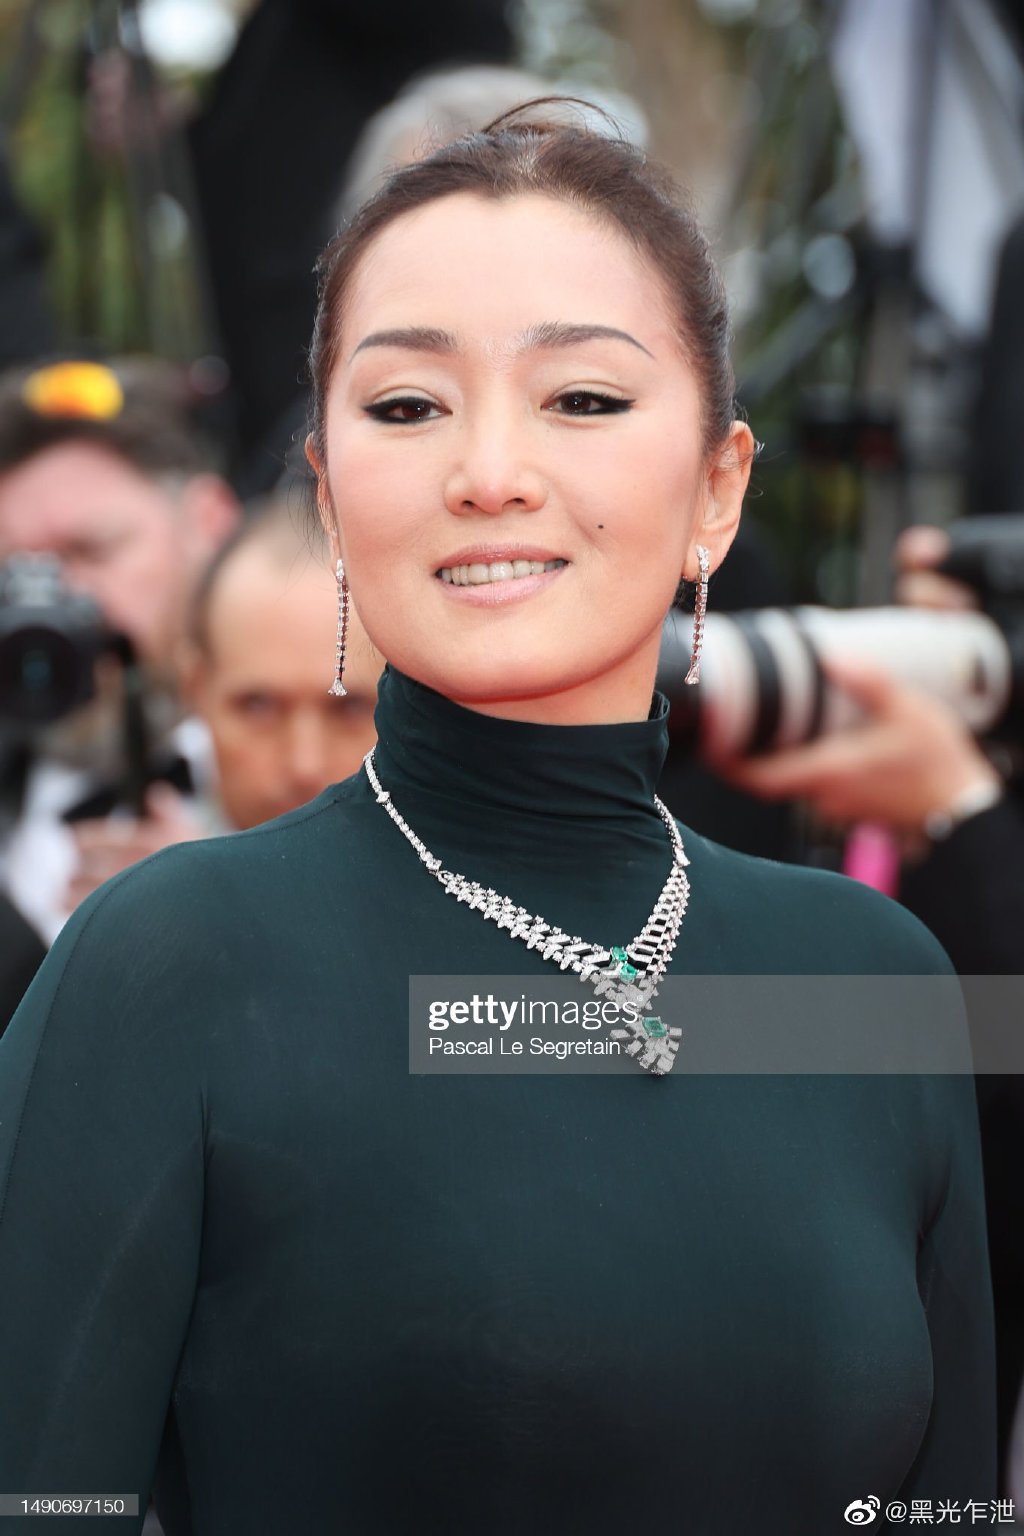 Dàn sao châu Á qua ống kính Getty Images tại LHP Cannes 2023: Chompoo Araya so kè ác liệt với Phạm Băng Băng, Chu Nhất Long soái khí như tổng tài - Ảnh 11.